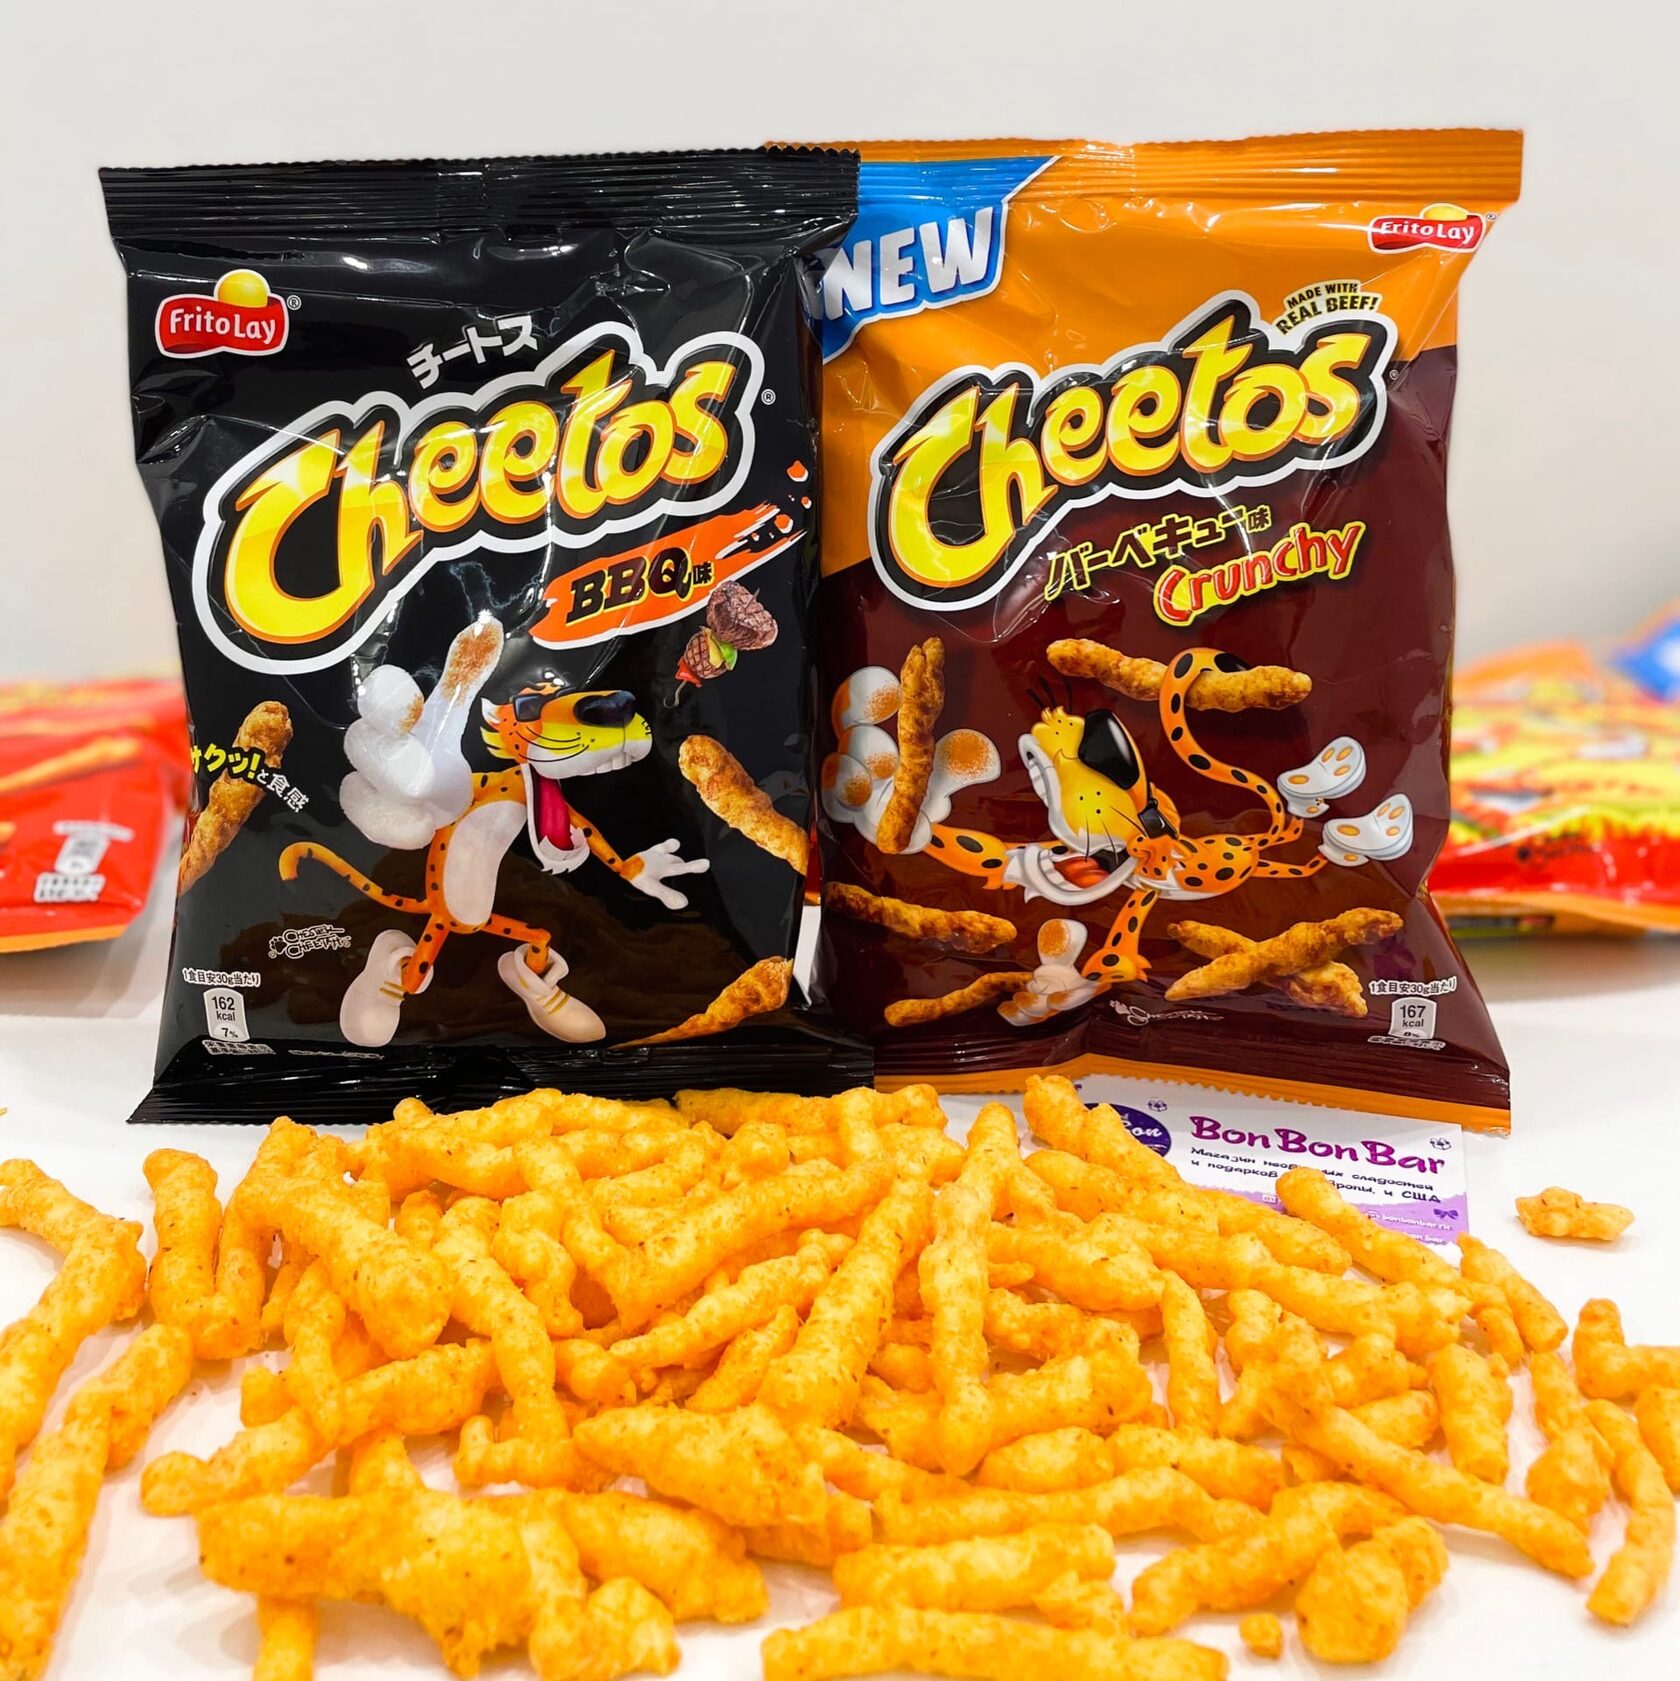 Cheetos Crunchy Flaming Hot.